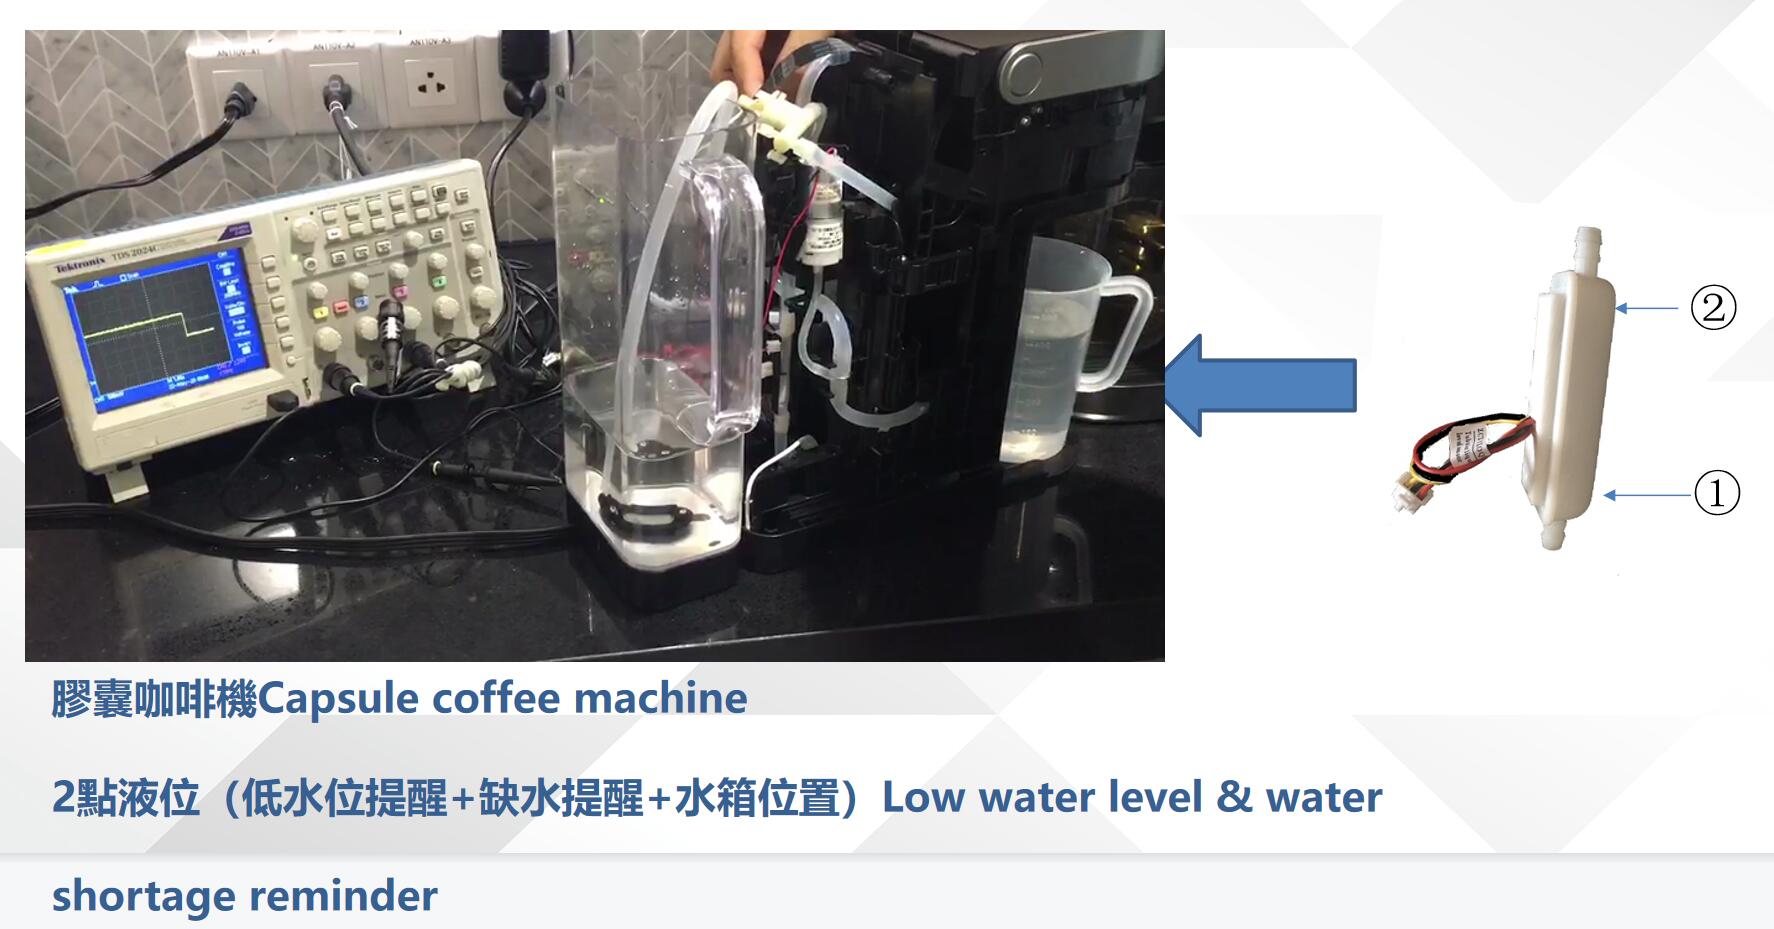 非接触式液位传感器在胶囊式咖啡机上的应用